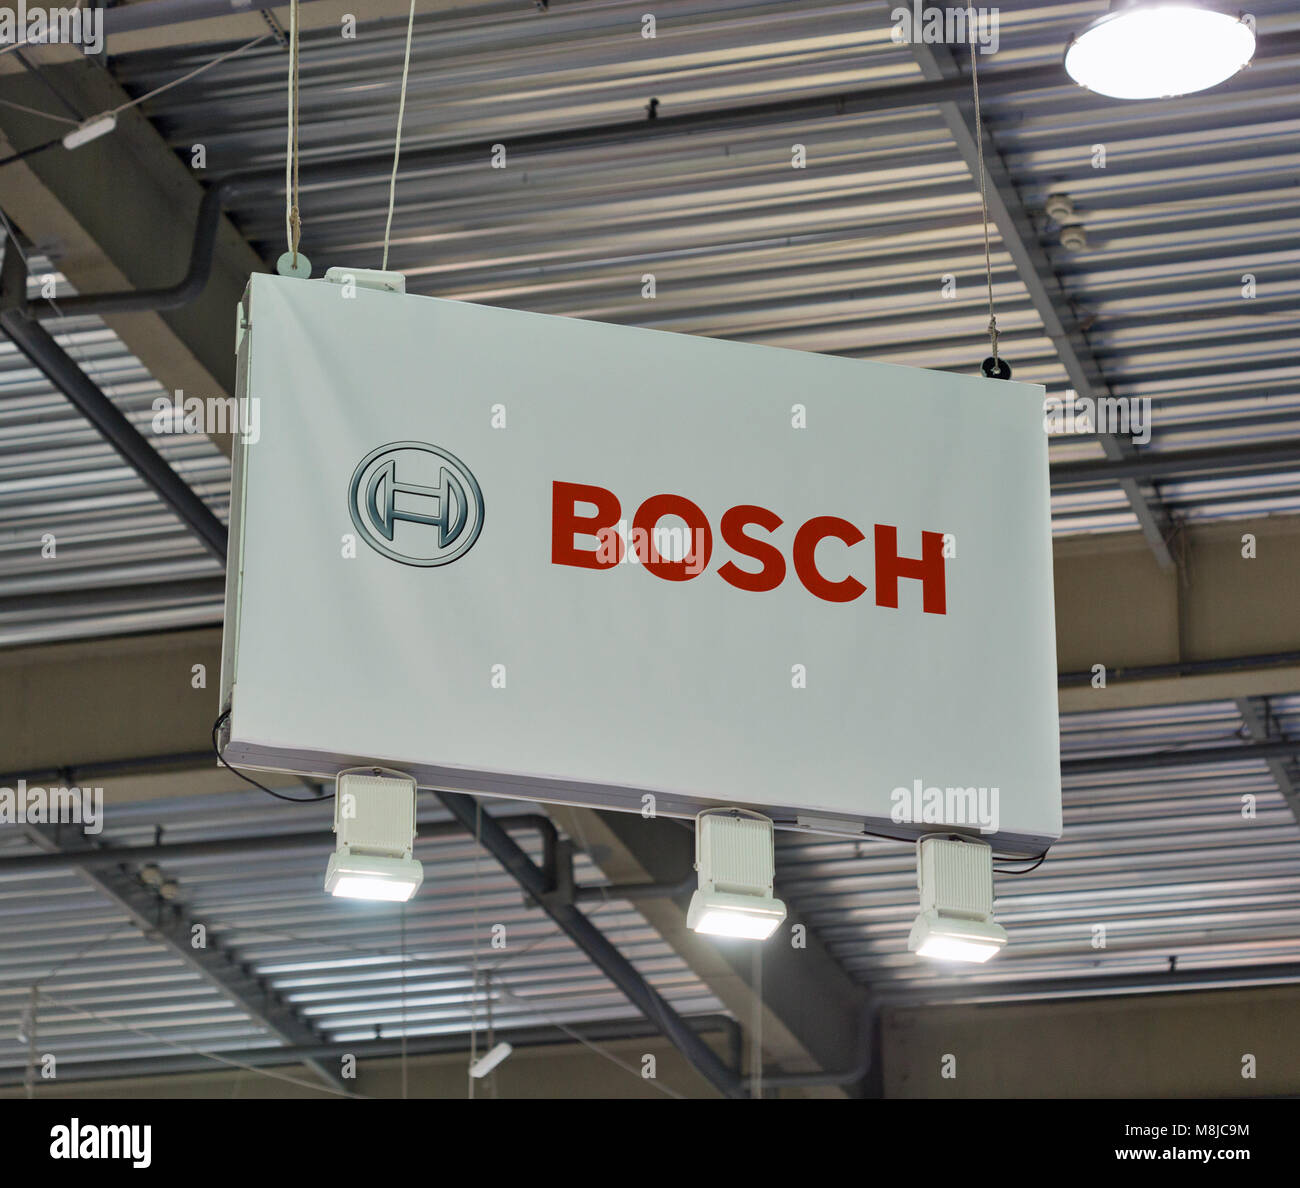 KIEV, Ucrania - 08 de octubre de 2017: el logotipo de Bosch, multinacional alemana de electrónica e ingeniería empresa stand durante 2017, la CEE electrónica más grande Foto de stock